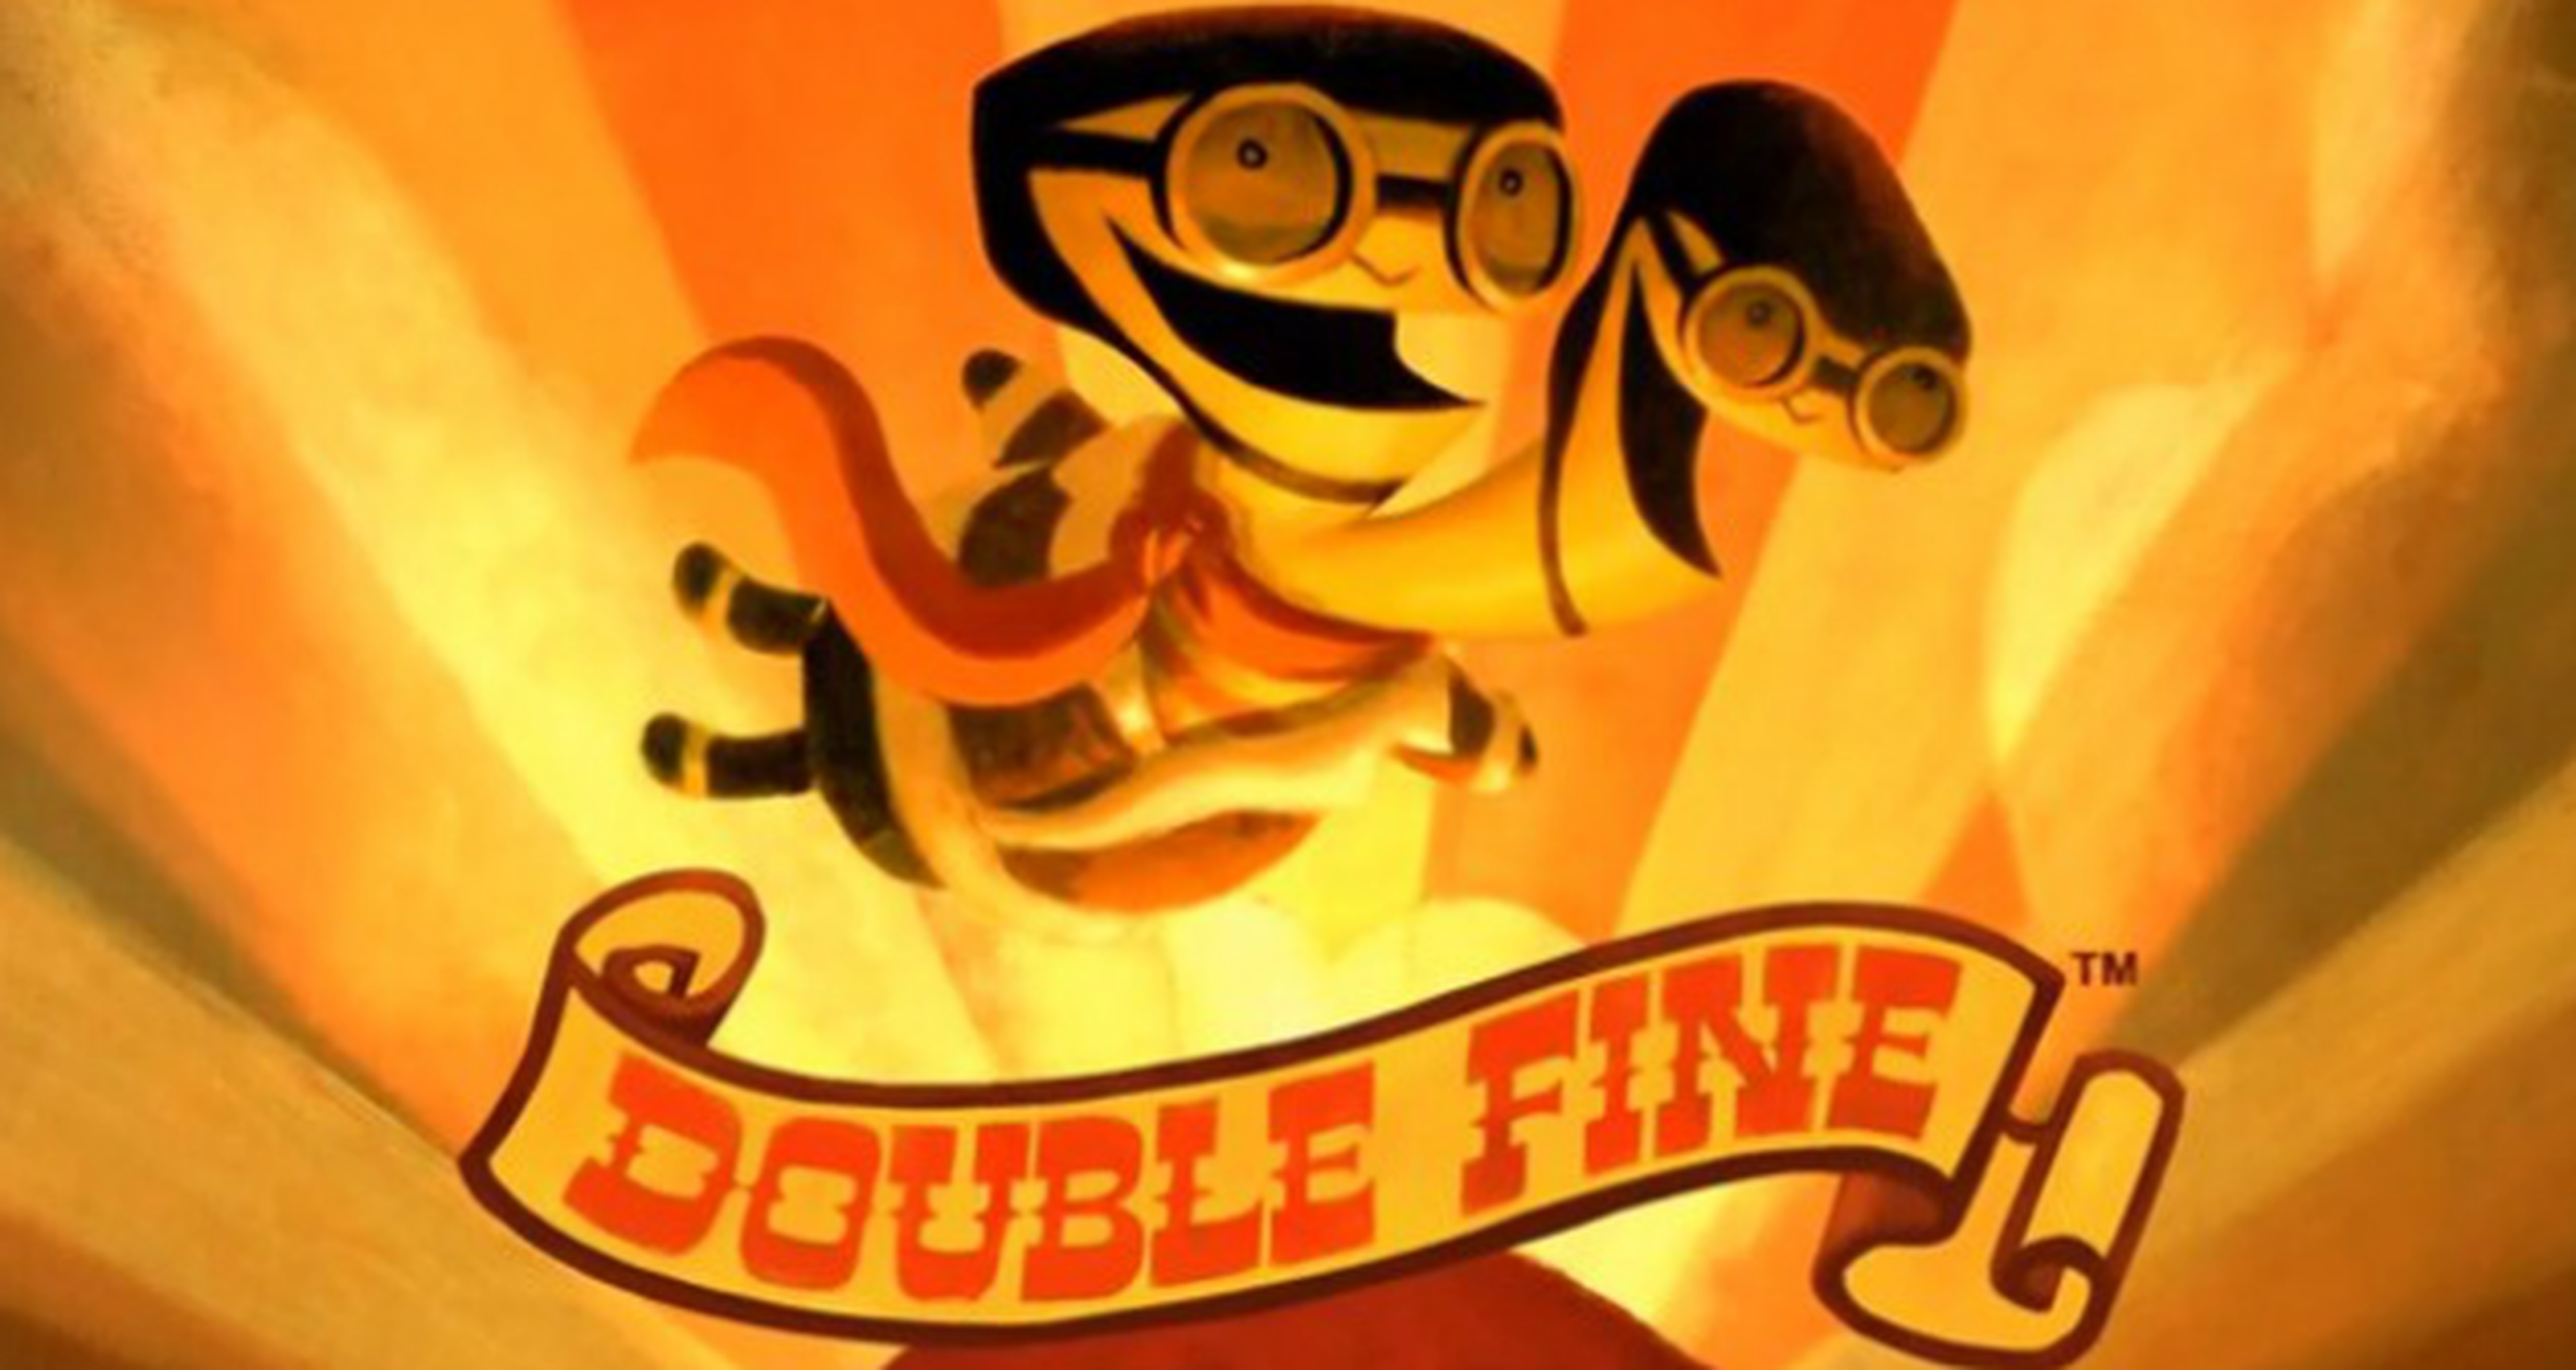 Double Fine cancela uno de sus juegos y sufre despidos